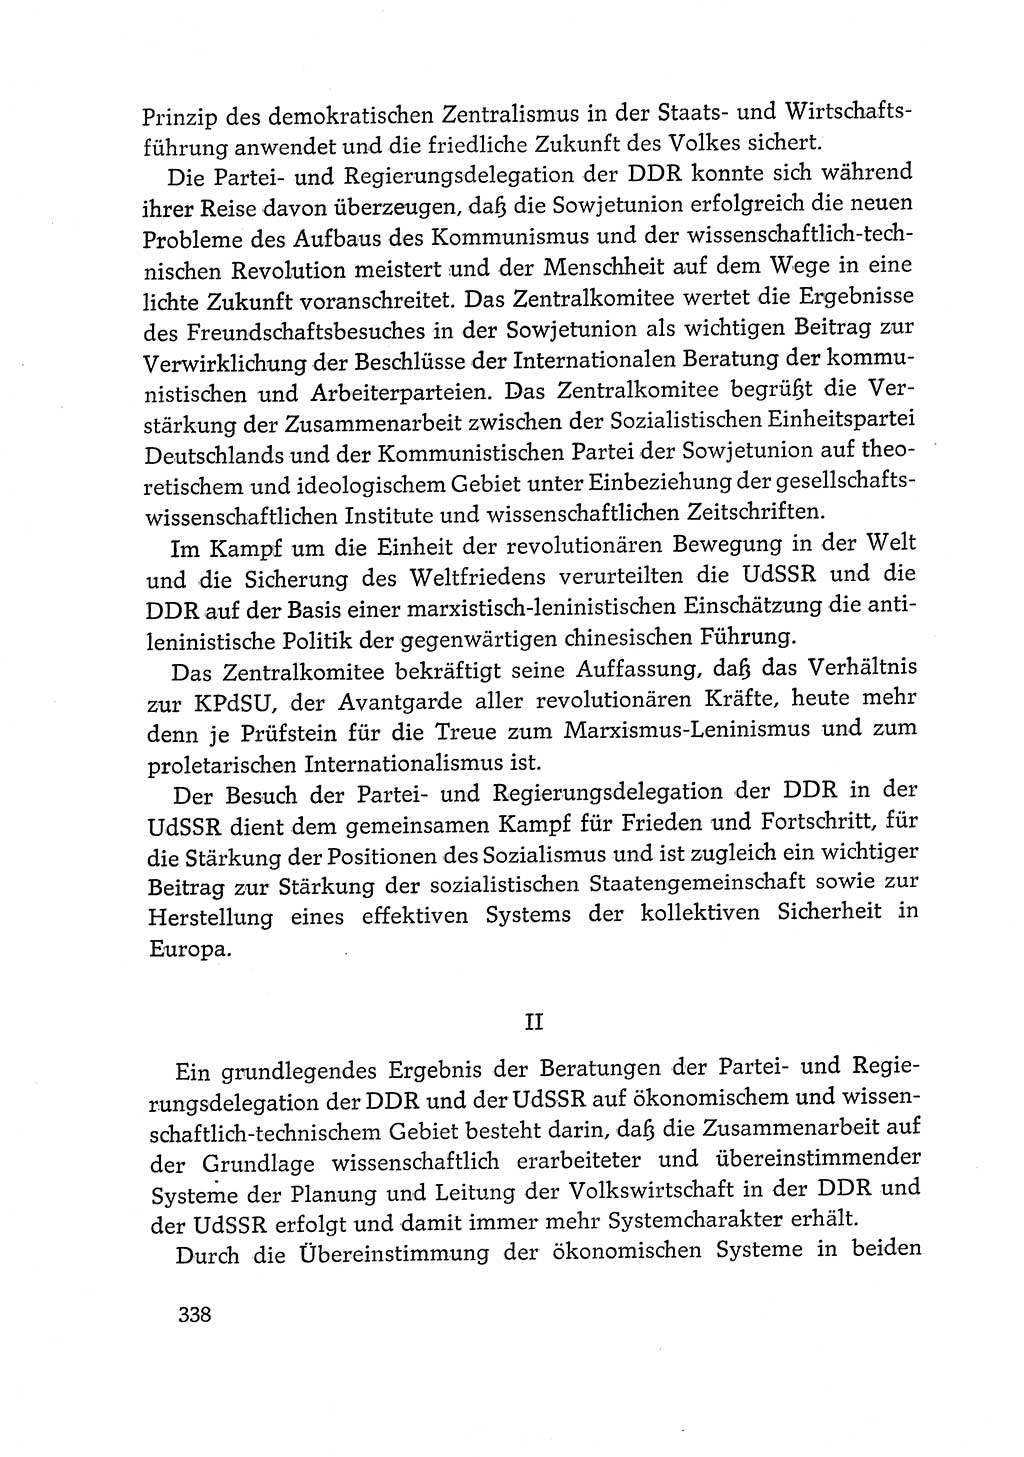 Dokumente der Sozialistischen Einheitspartei Deutschlands (SED) [Deutsche Demokratische Republik (DDR)] 1968-1969, Seite 338 (Dok. SED DDR 1968-1969, S. 338)